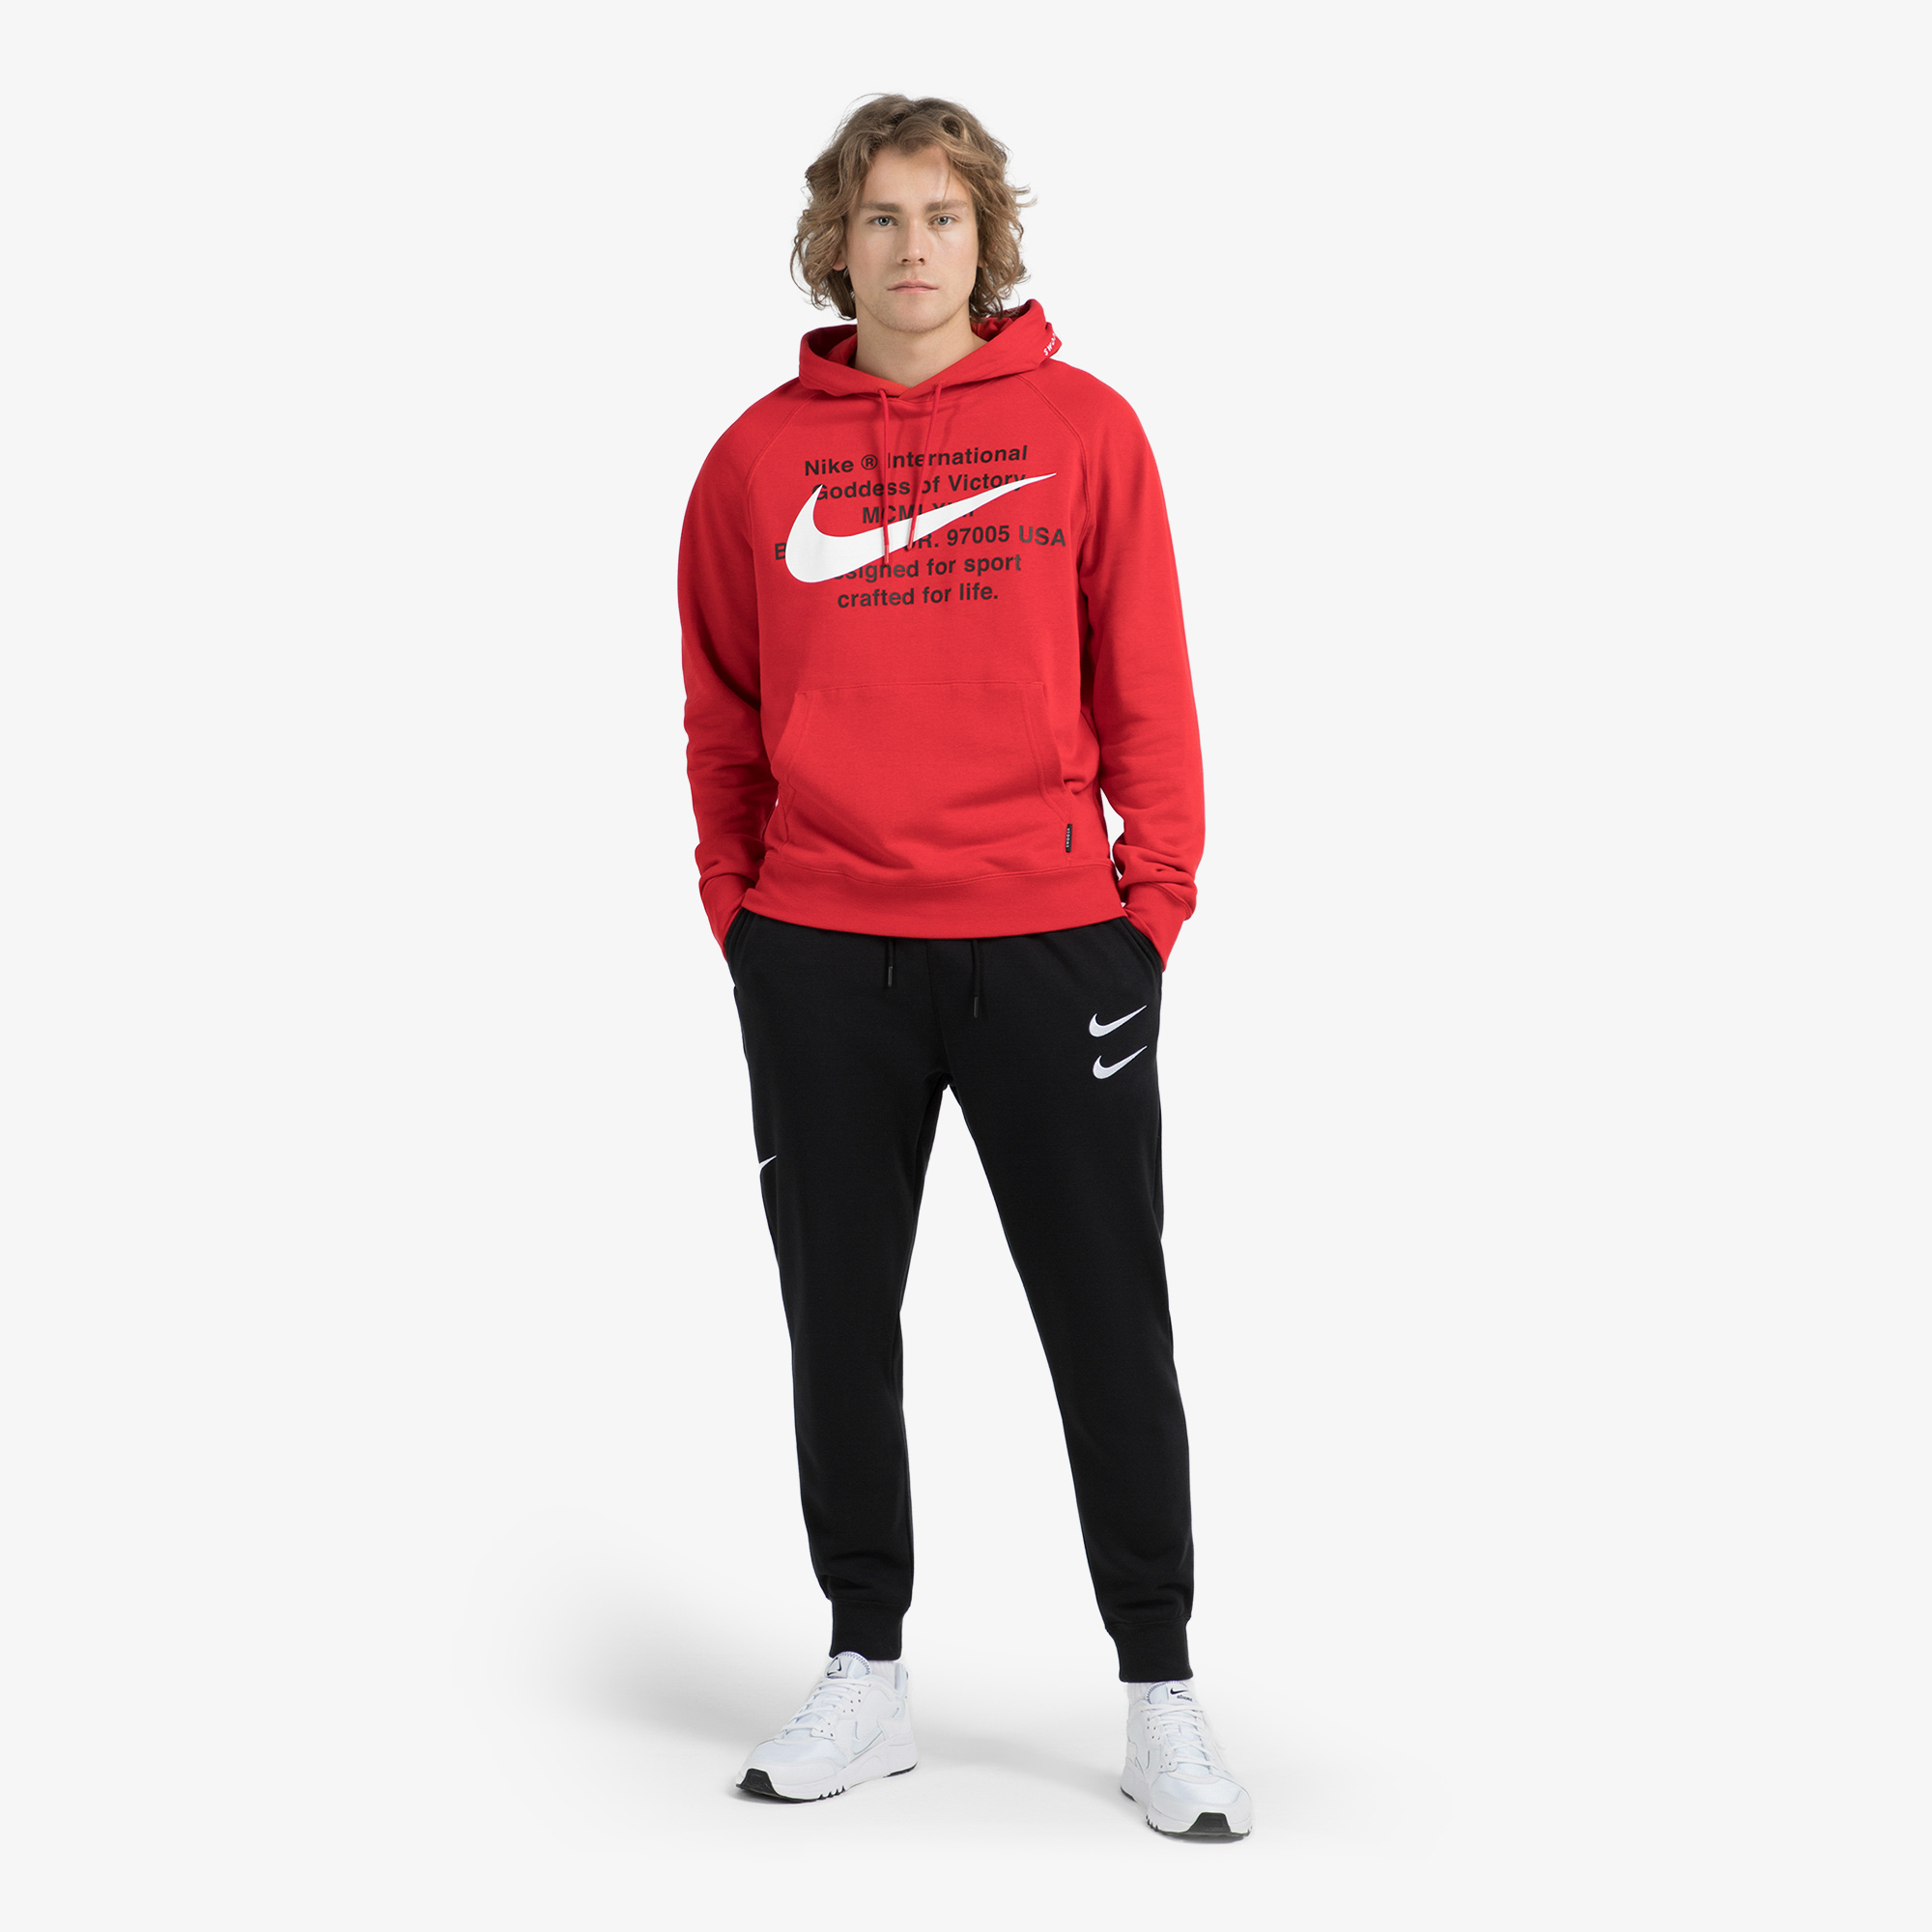 Джемперы Nike Nike Sportswear Swoosh CJ4863N06-657, цвет красный, размер 52-54 CS20000243 - фото 3